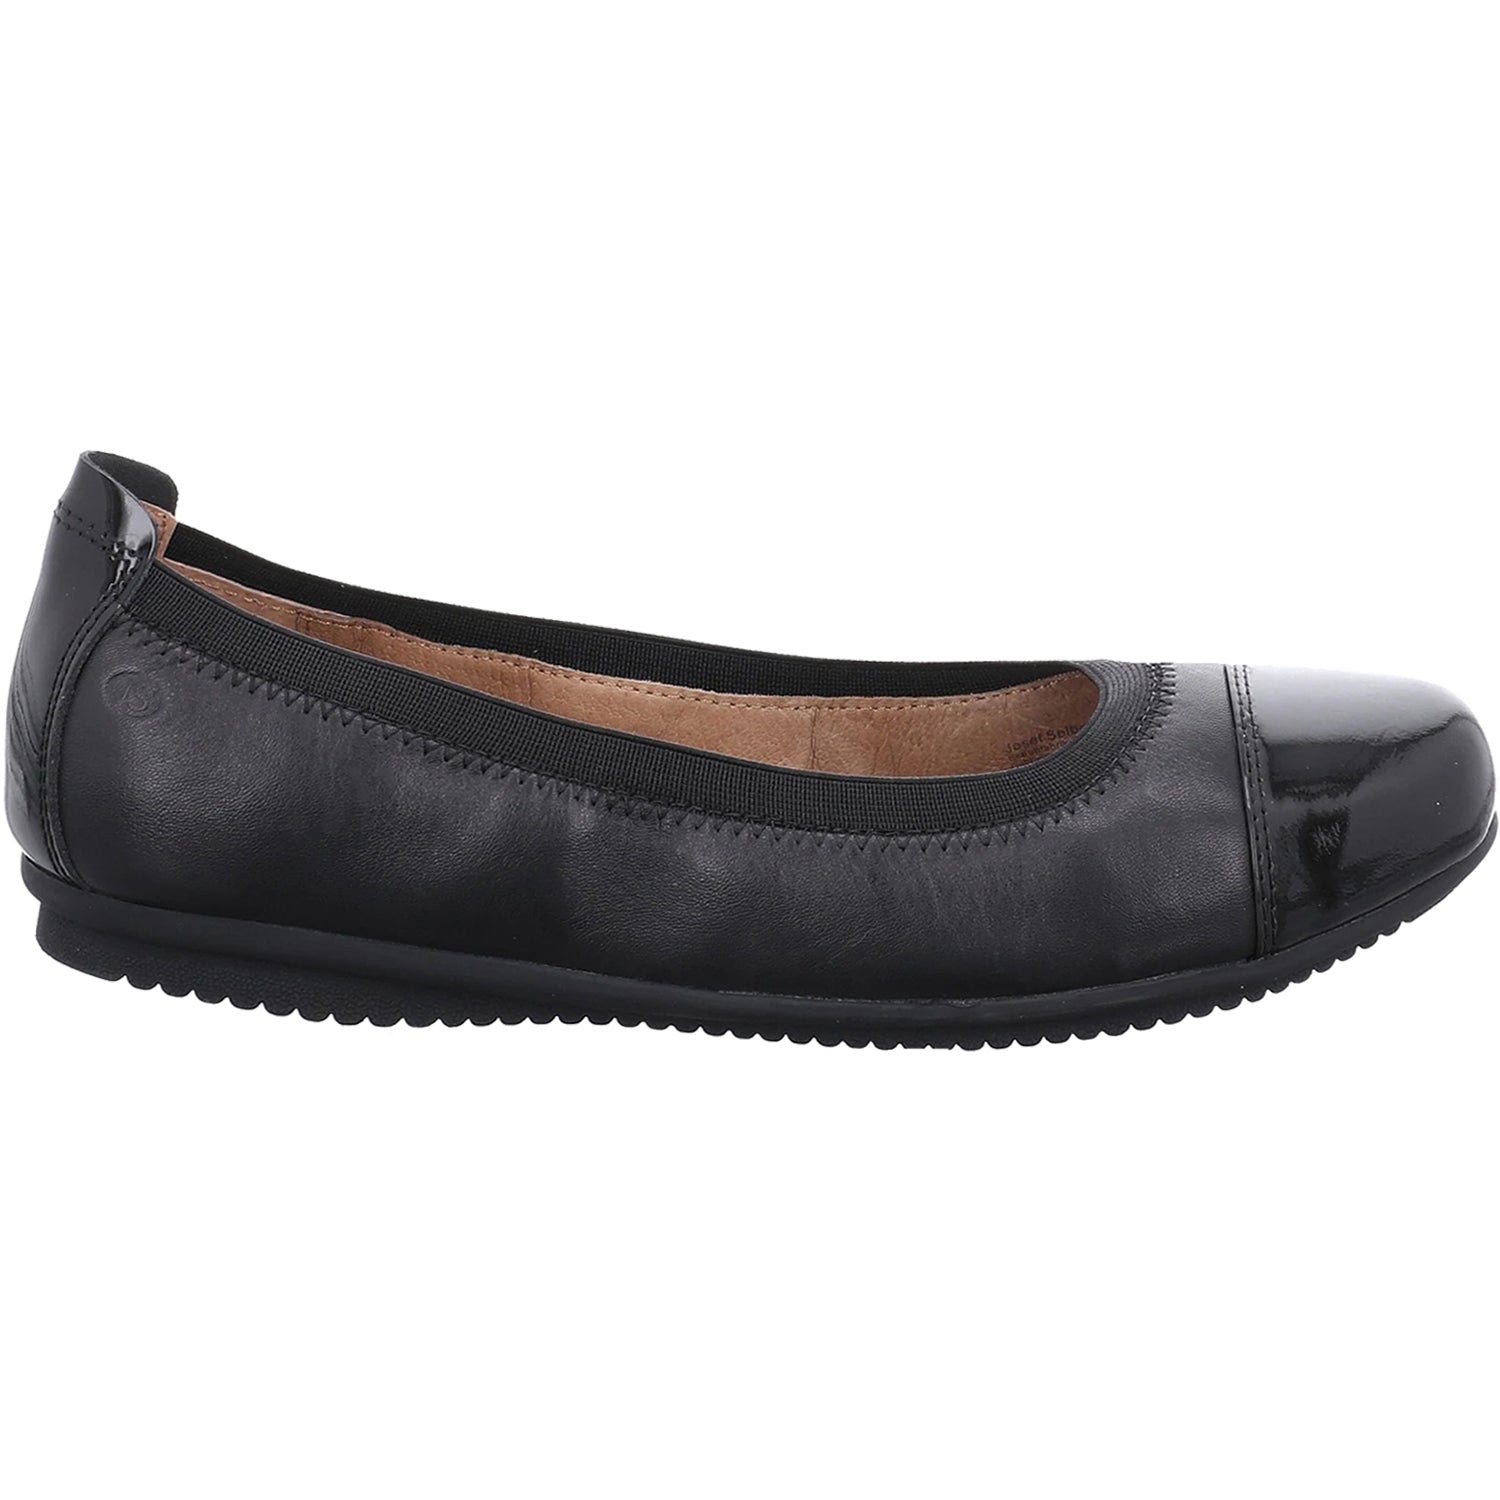 Josef Seibel Pippa 04 Black | Women's Slip-On Flats | Footwear etc.